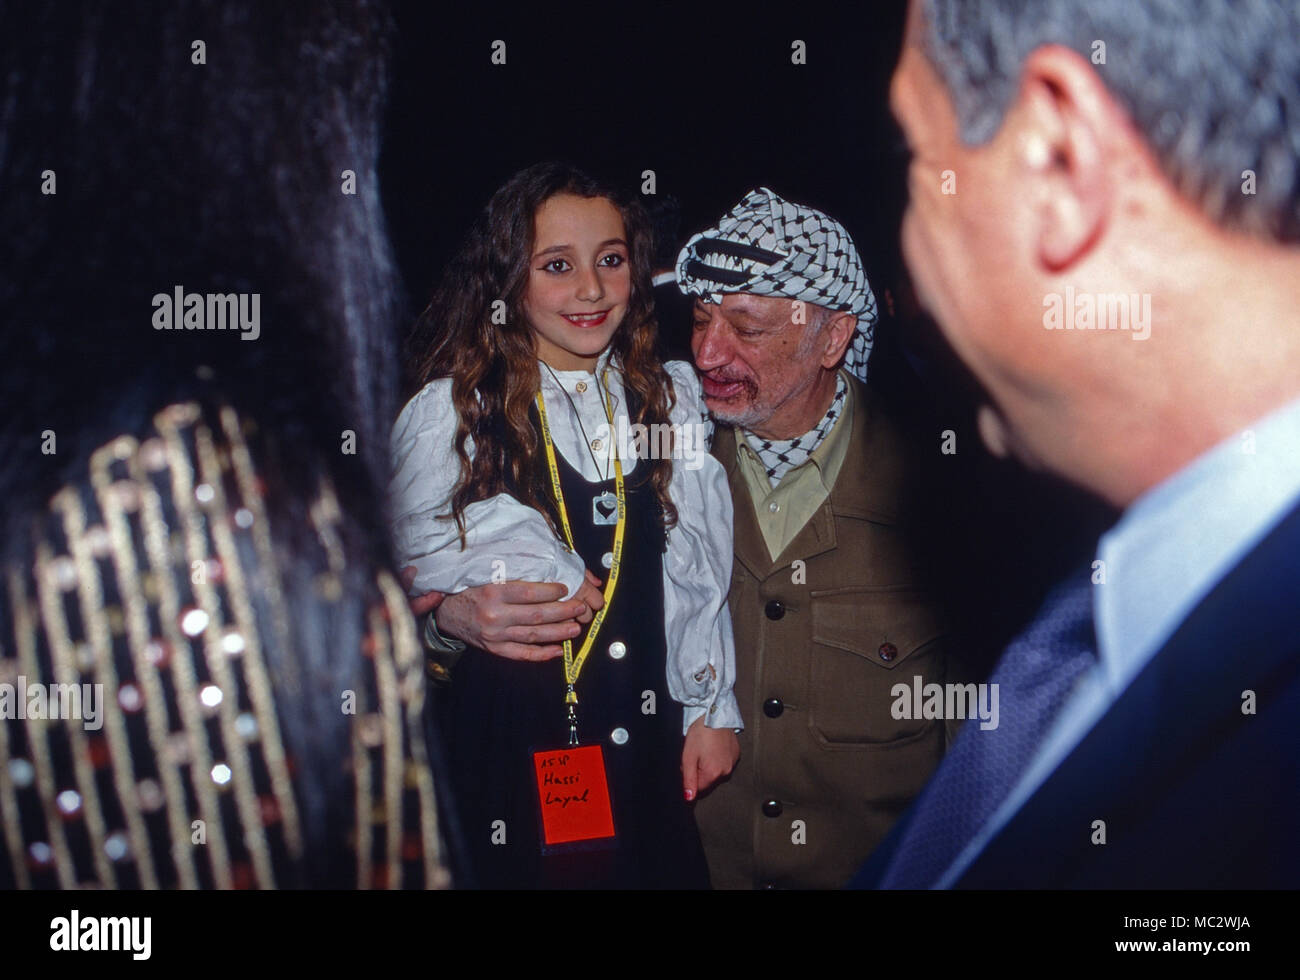 Palästinenserführer Jassir Arafat und die Kleine Hassi Layal in Bonn, Deutschland 1997. PLO leader Yasser Arafat with the littly Hassi Layal at Bonn, Germany 1997. Stock Photo